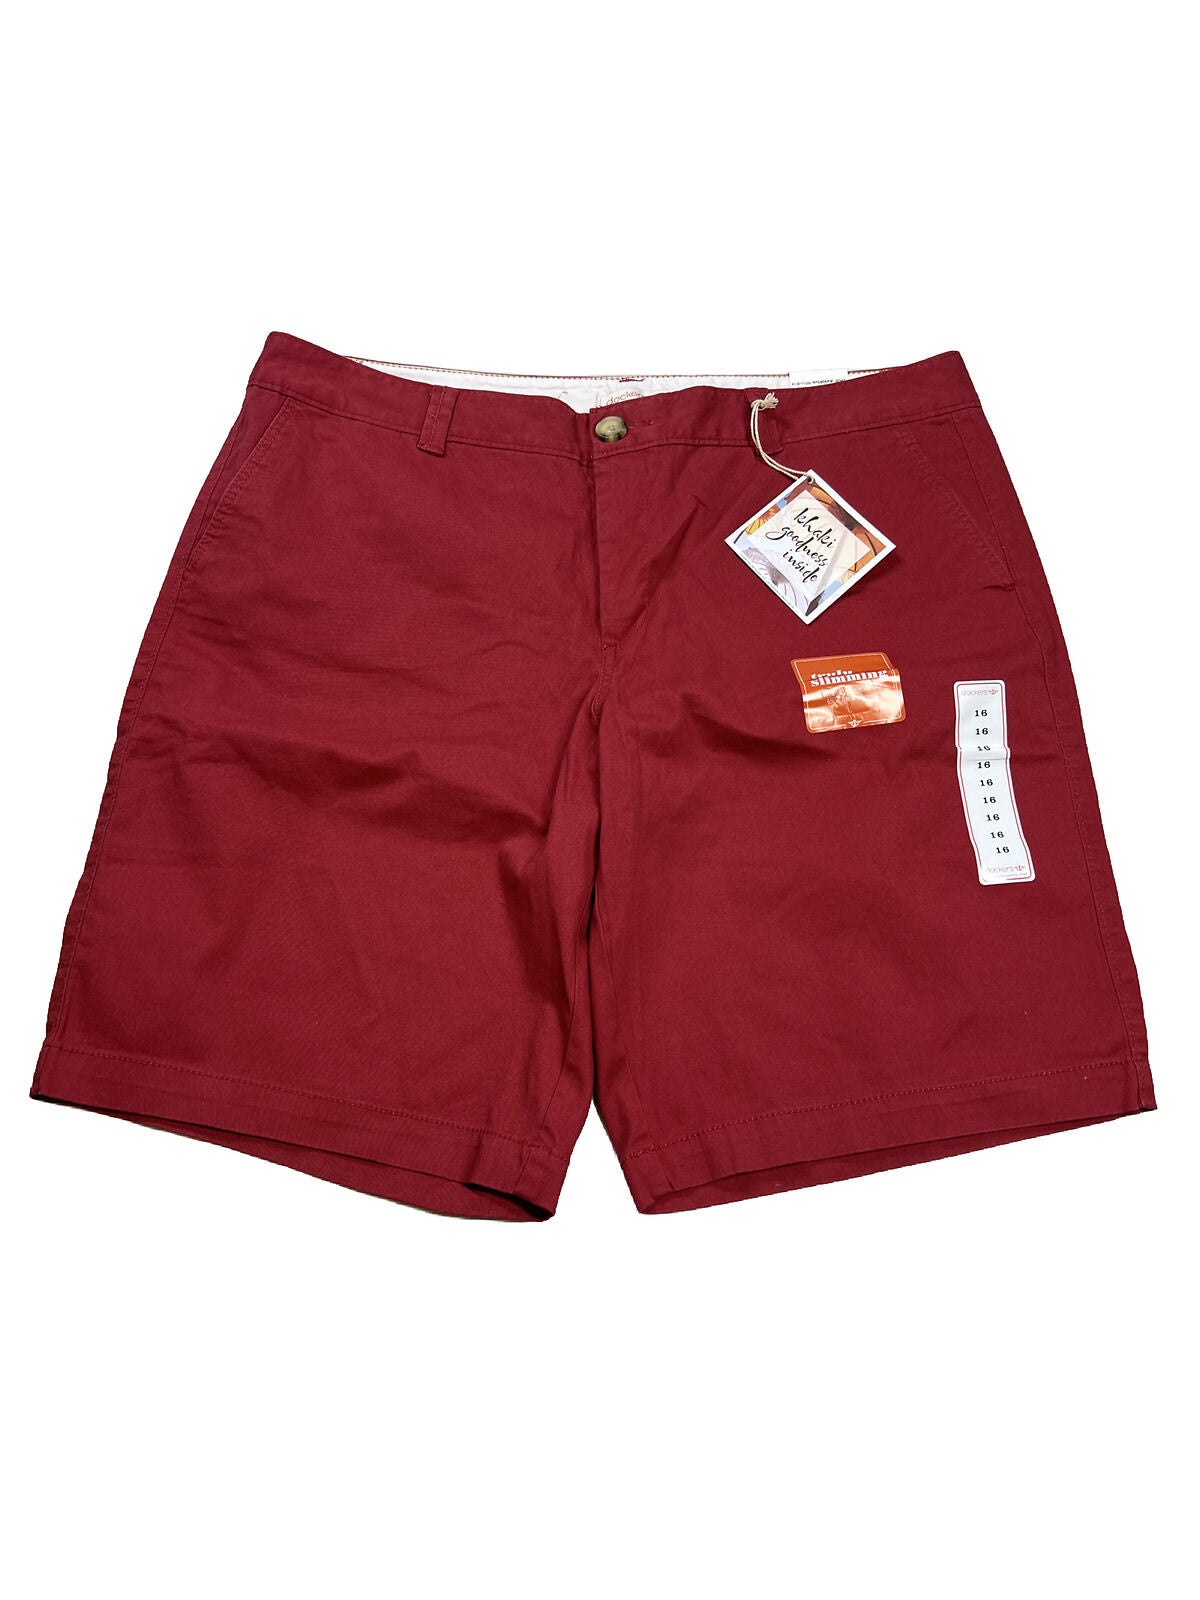 NUEVOS pantalones cortos color caqui rojos verdaderamente adelgazantes de Dockers para mujer - 16